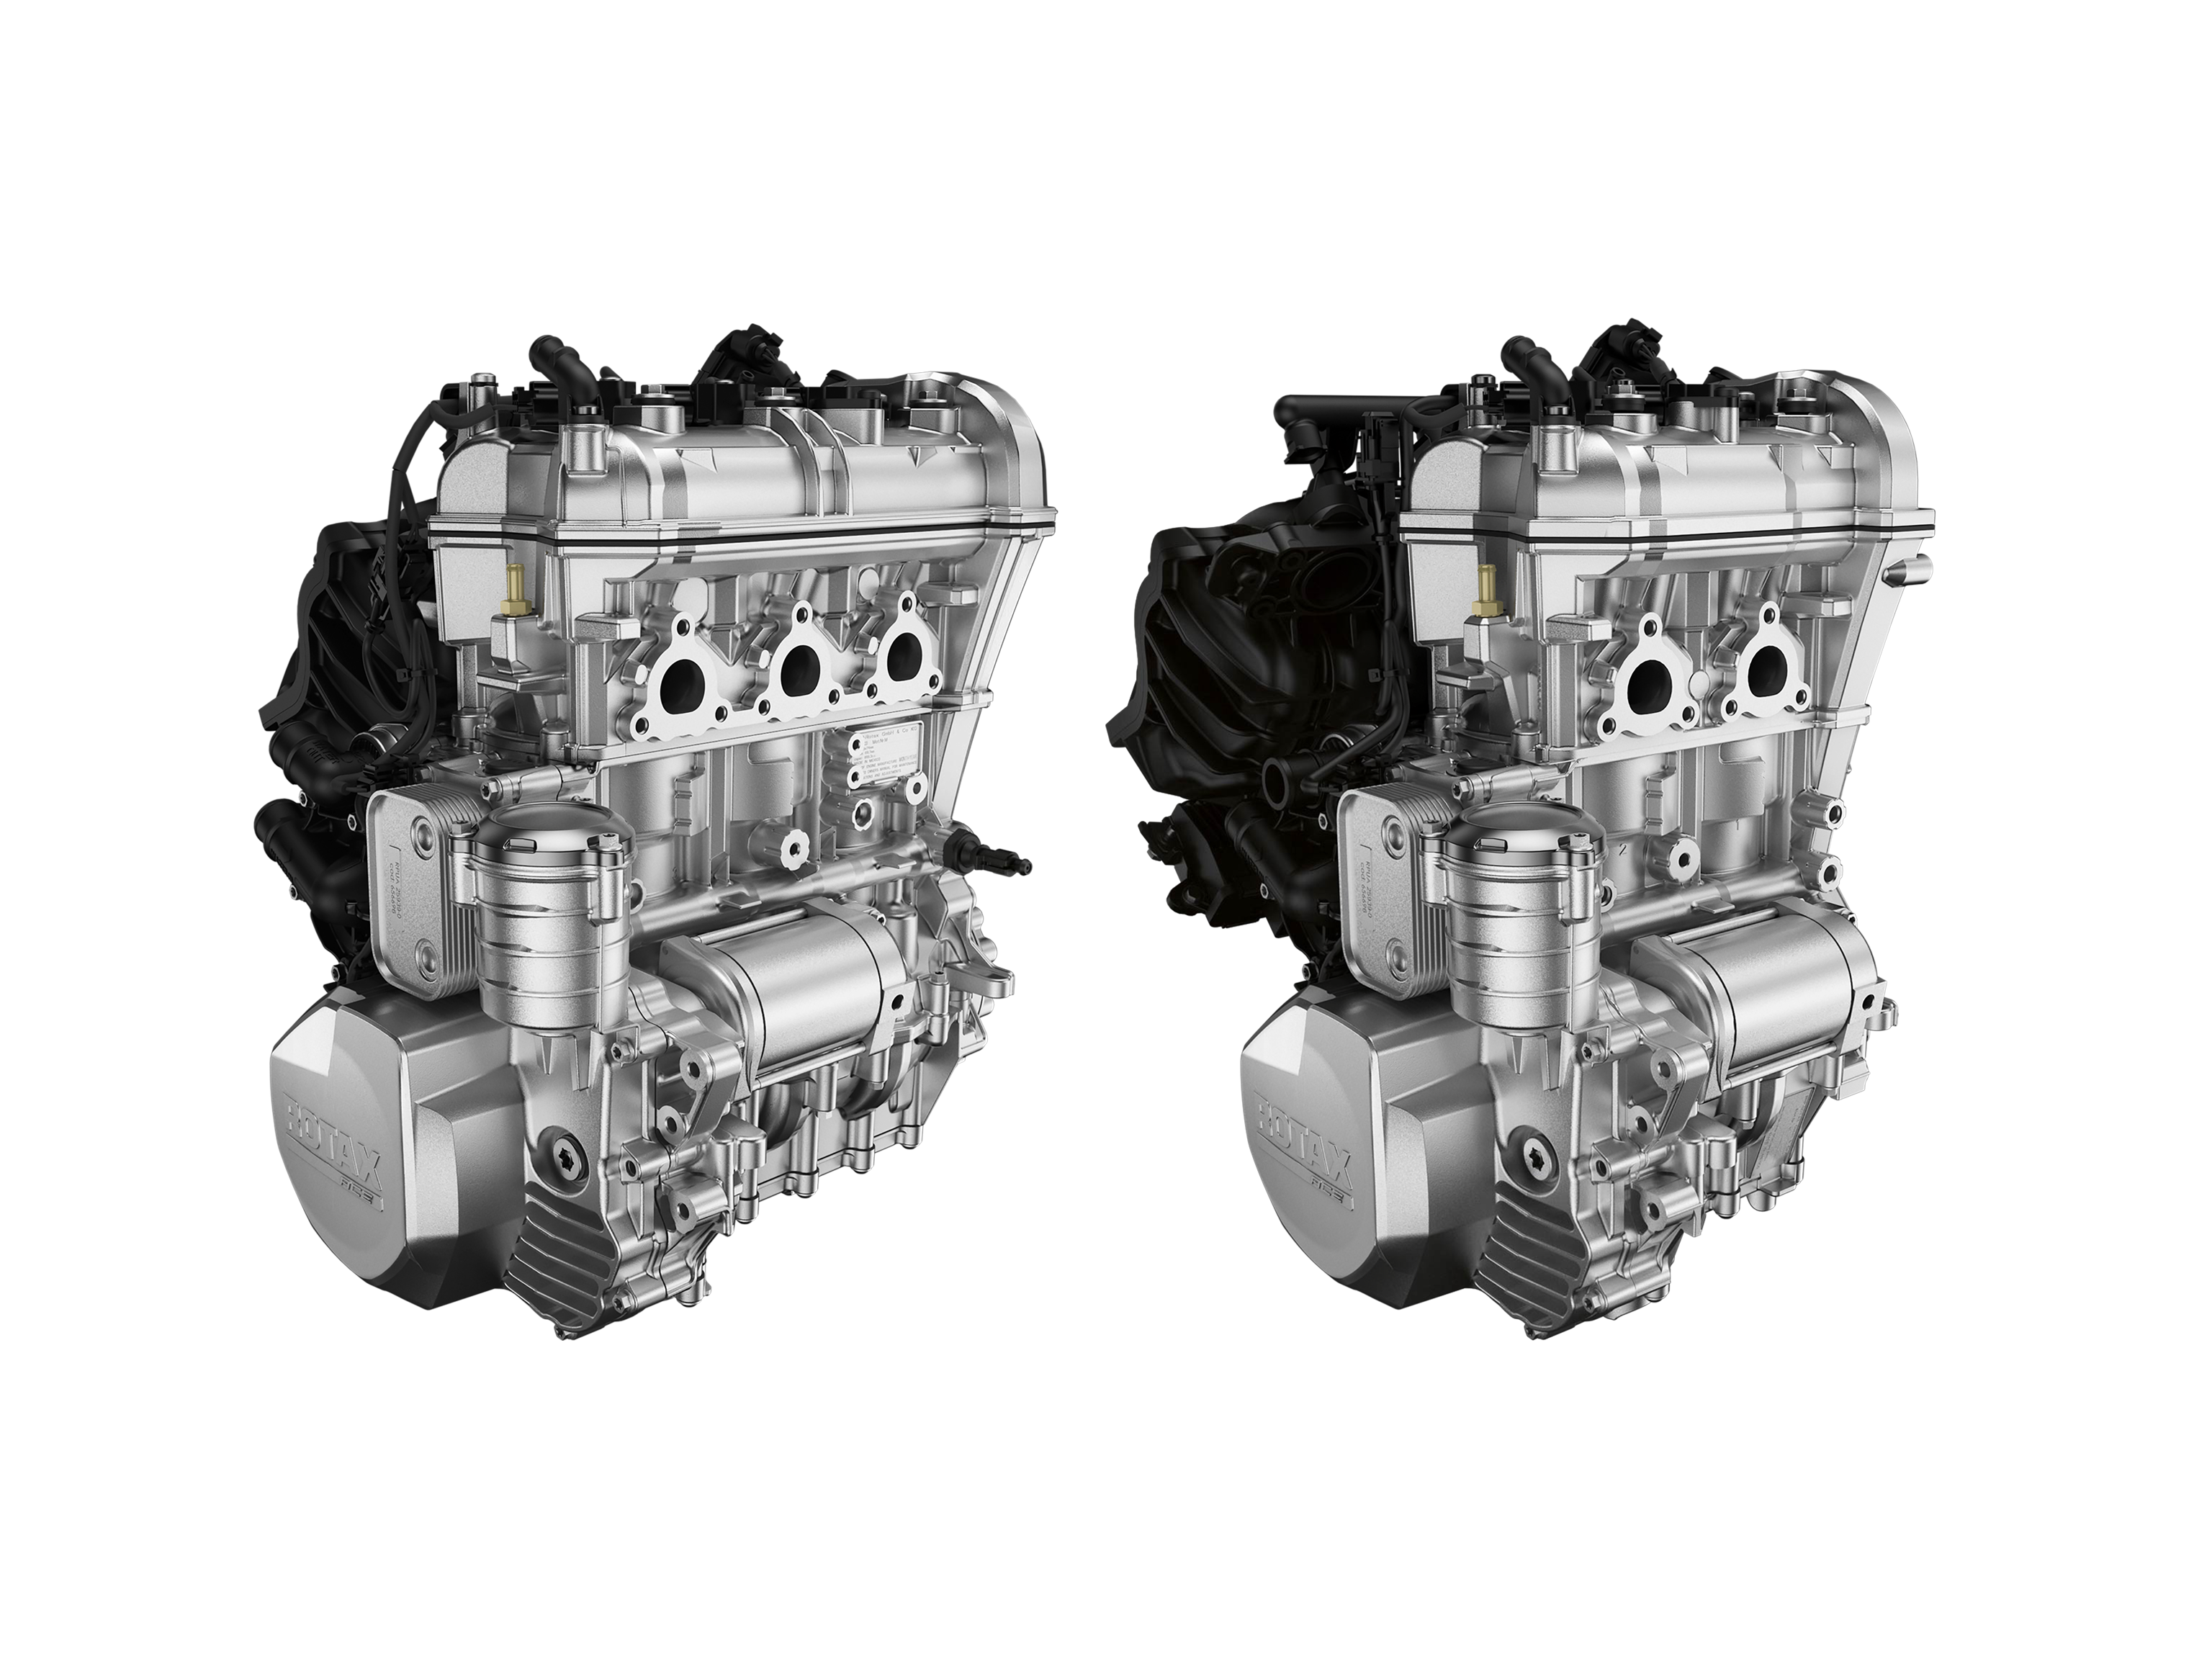 Η εξαιρετική φήμη του κινητήρα Rotax για υψηλές επιδόσεις, ανώτερη κατανάλωση και απόλυτη αποδεδειγμένη αξιοπιστία τον καθιστά τη μοναδική επιλογή για τη σειρά διασκεδαστικών οχημάτων Can-Am Ryker. Ο 2-κύλινδρος Rotax 600 ACE είναι η απόλυτη προσιτή απόδοση, ενώ ο 3-κύλινδρος Rotax 900 ACE είναι το πρότυπο ισχύος και ενθουσιασμού της επιλογής.